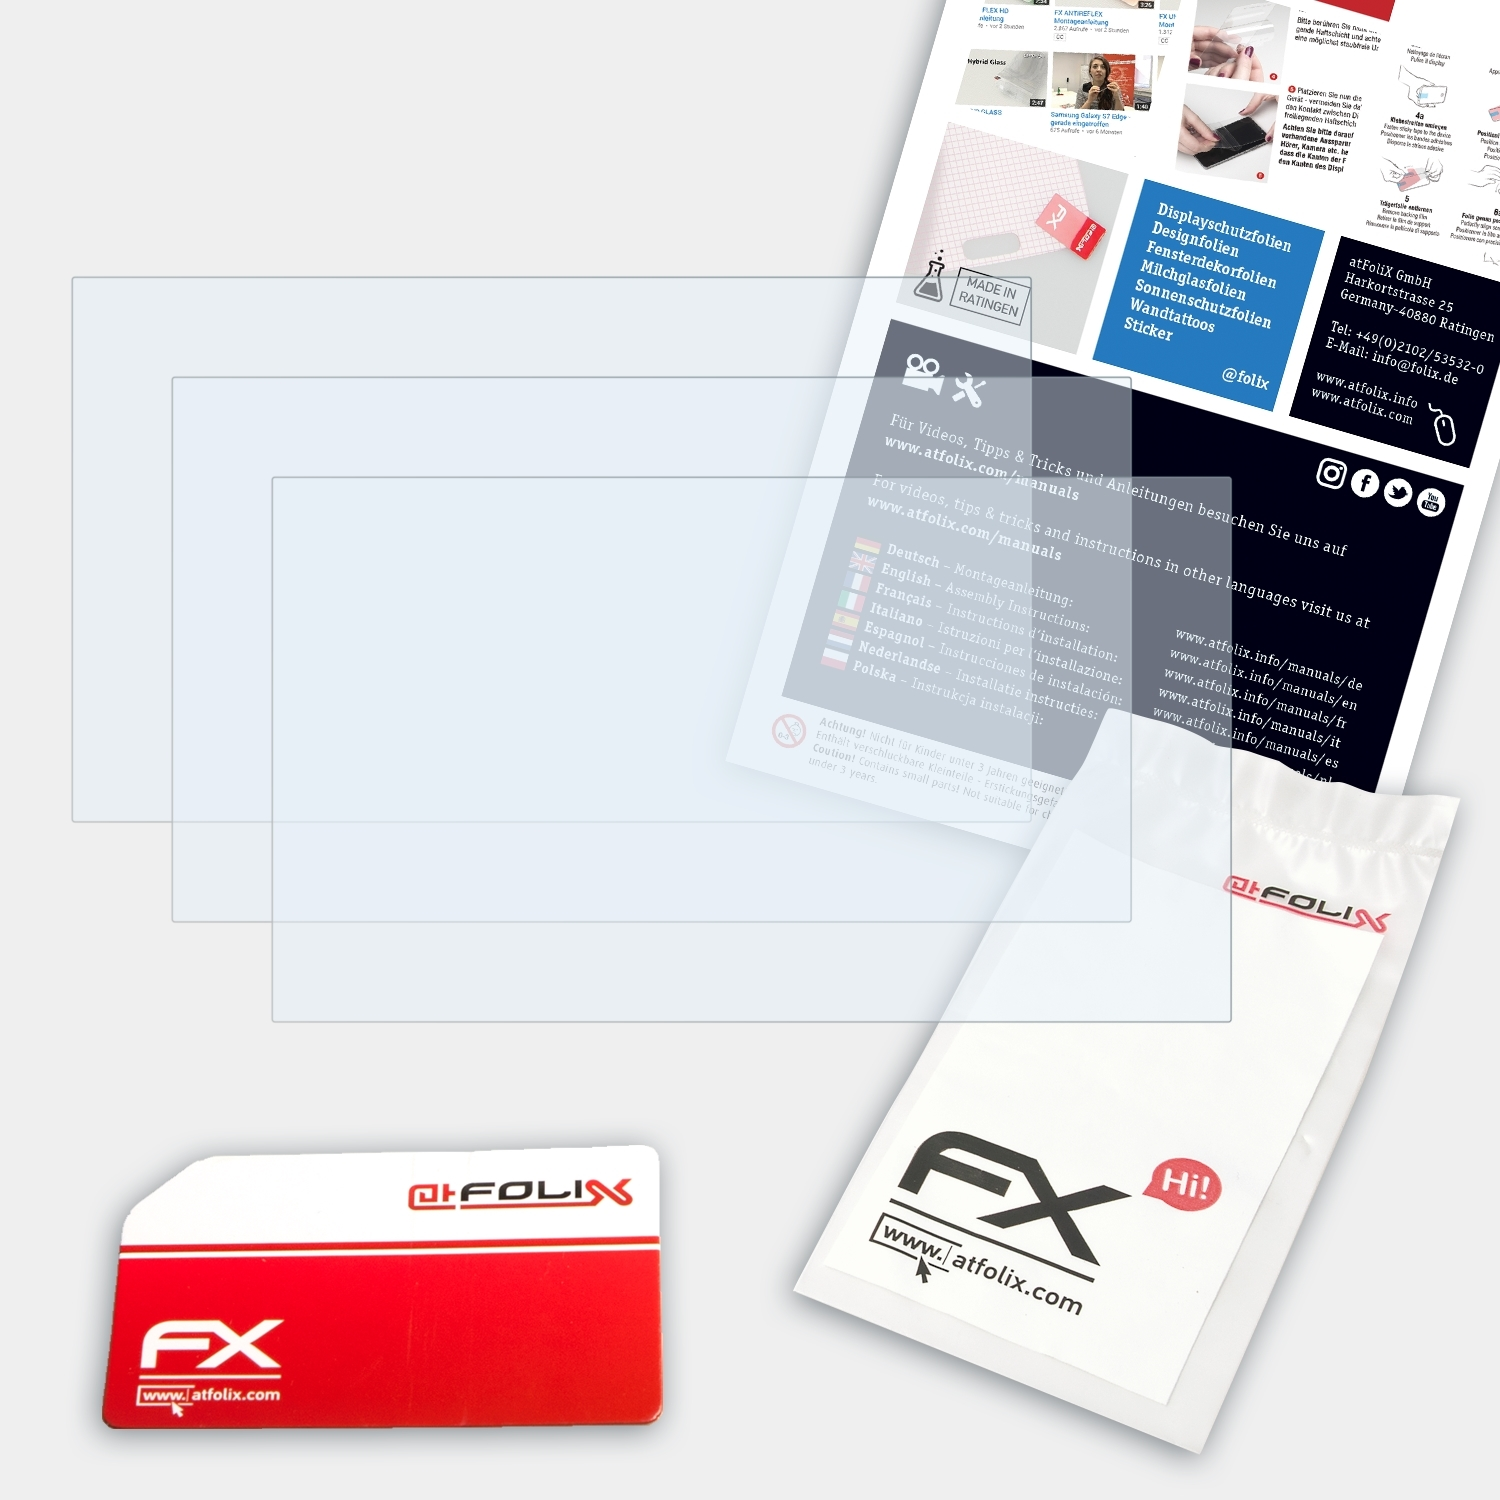 ATFOLIX PSP-3004) FX-Clear 3x Displayschutz(für Sony